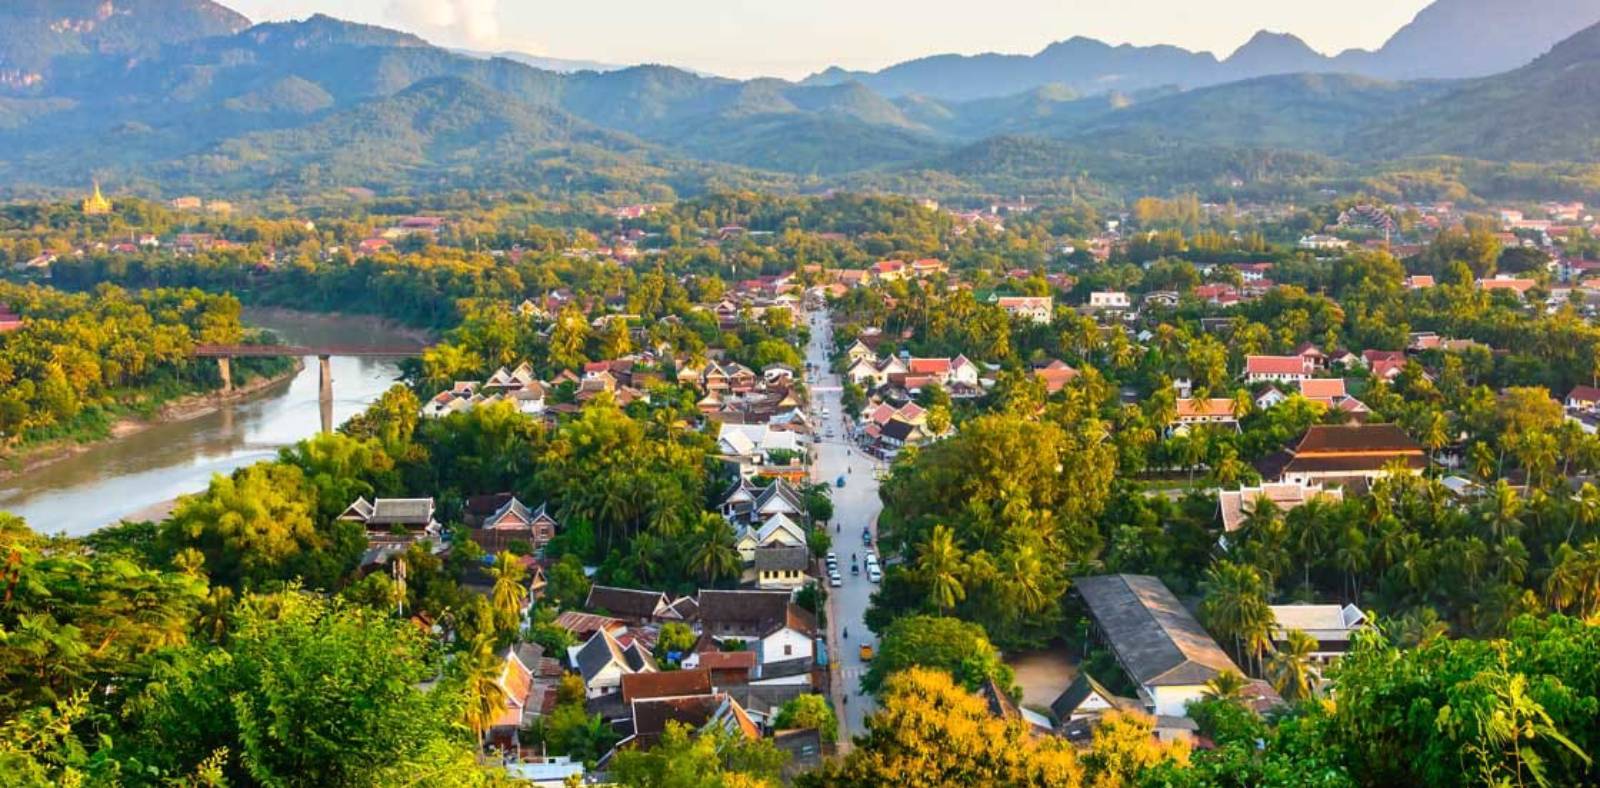 Top 10 Things To Do in Luang Prabang, Laos